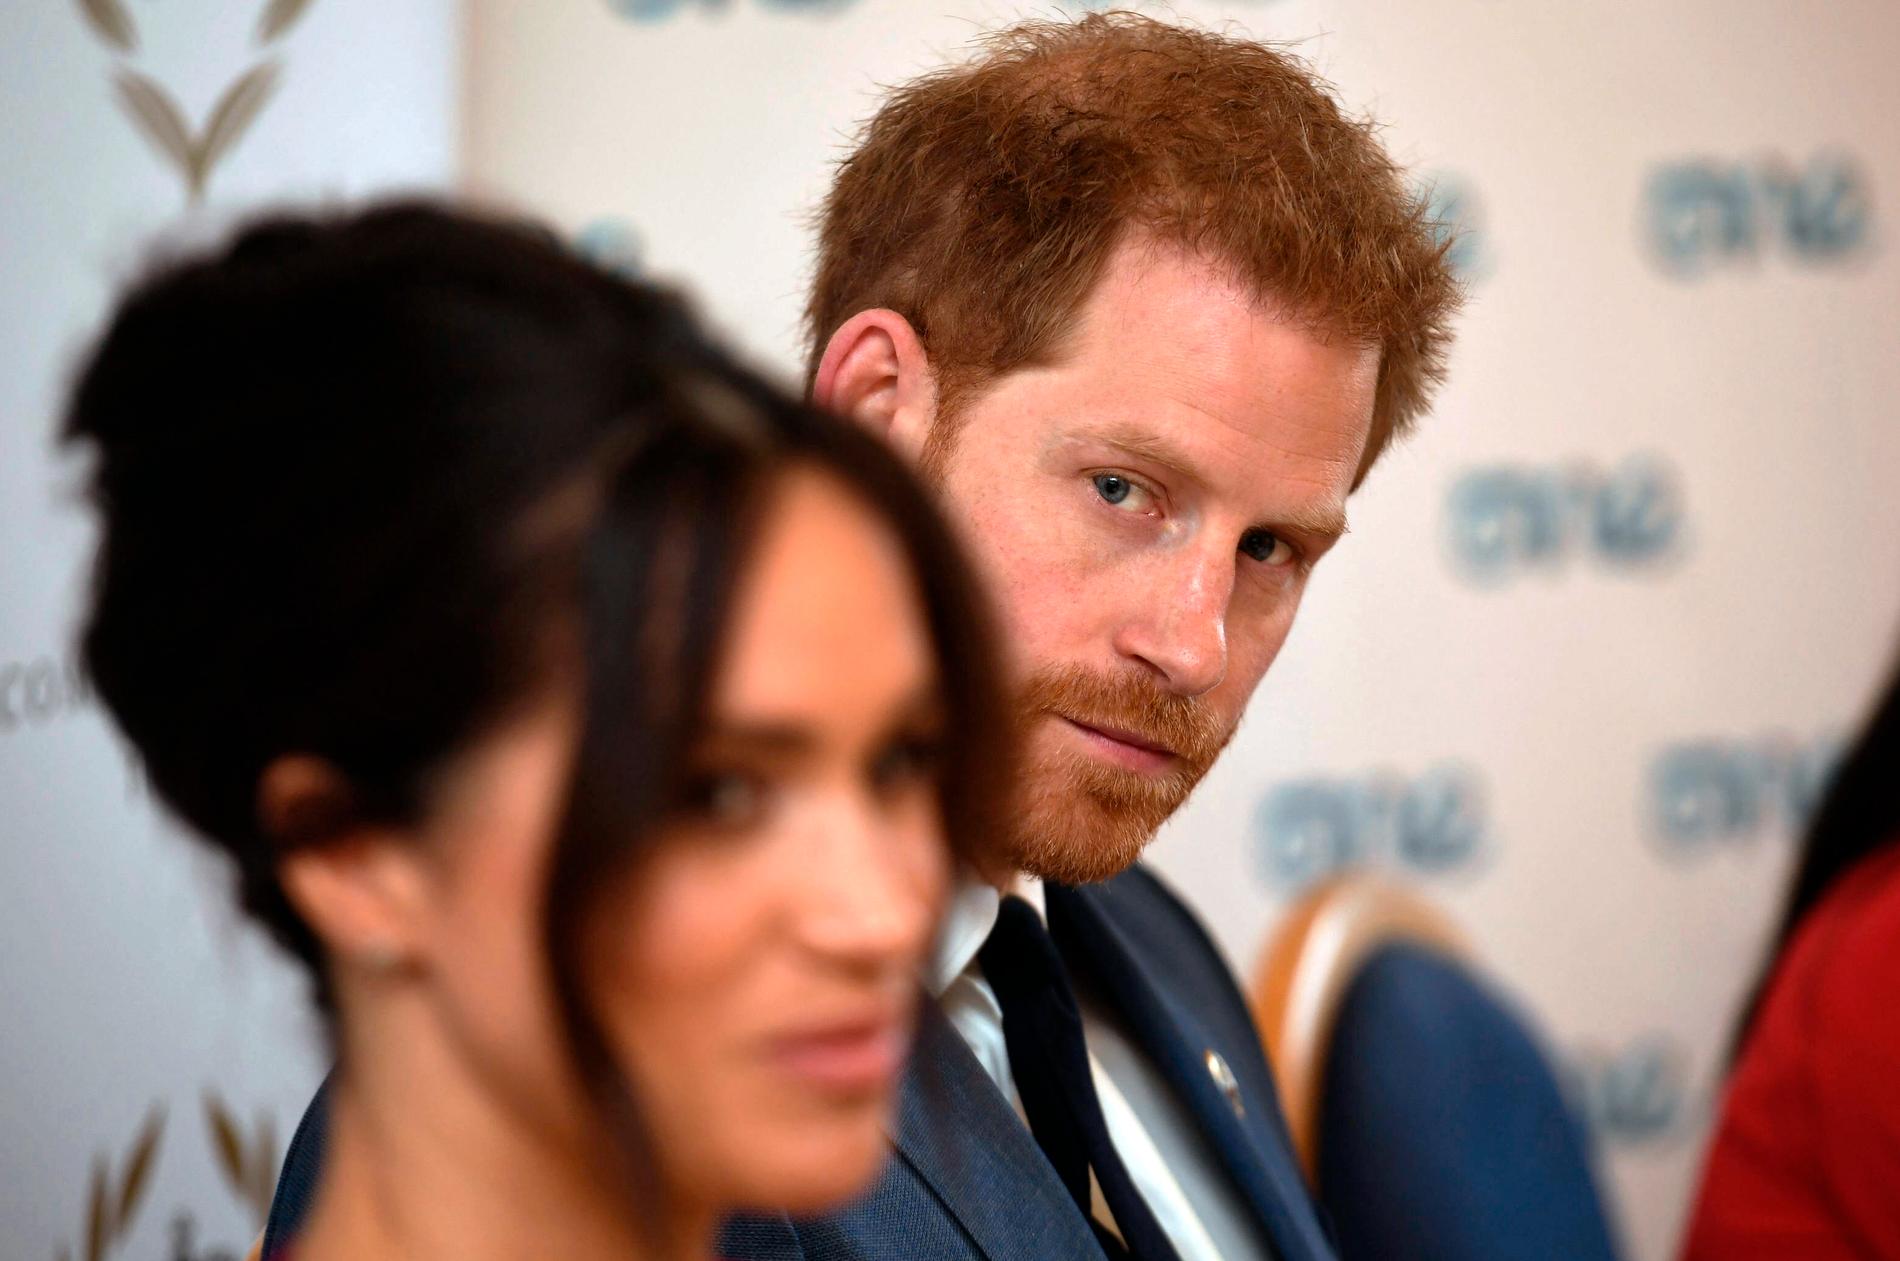 Brittiska media rapporterar att Meghan flytt landet och lämnat maken prins Harry att hantera krisen.